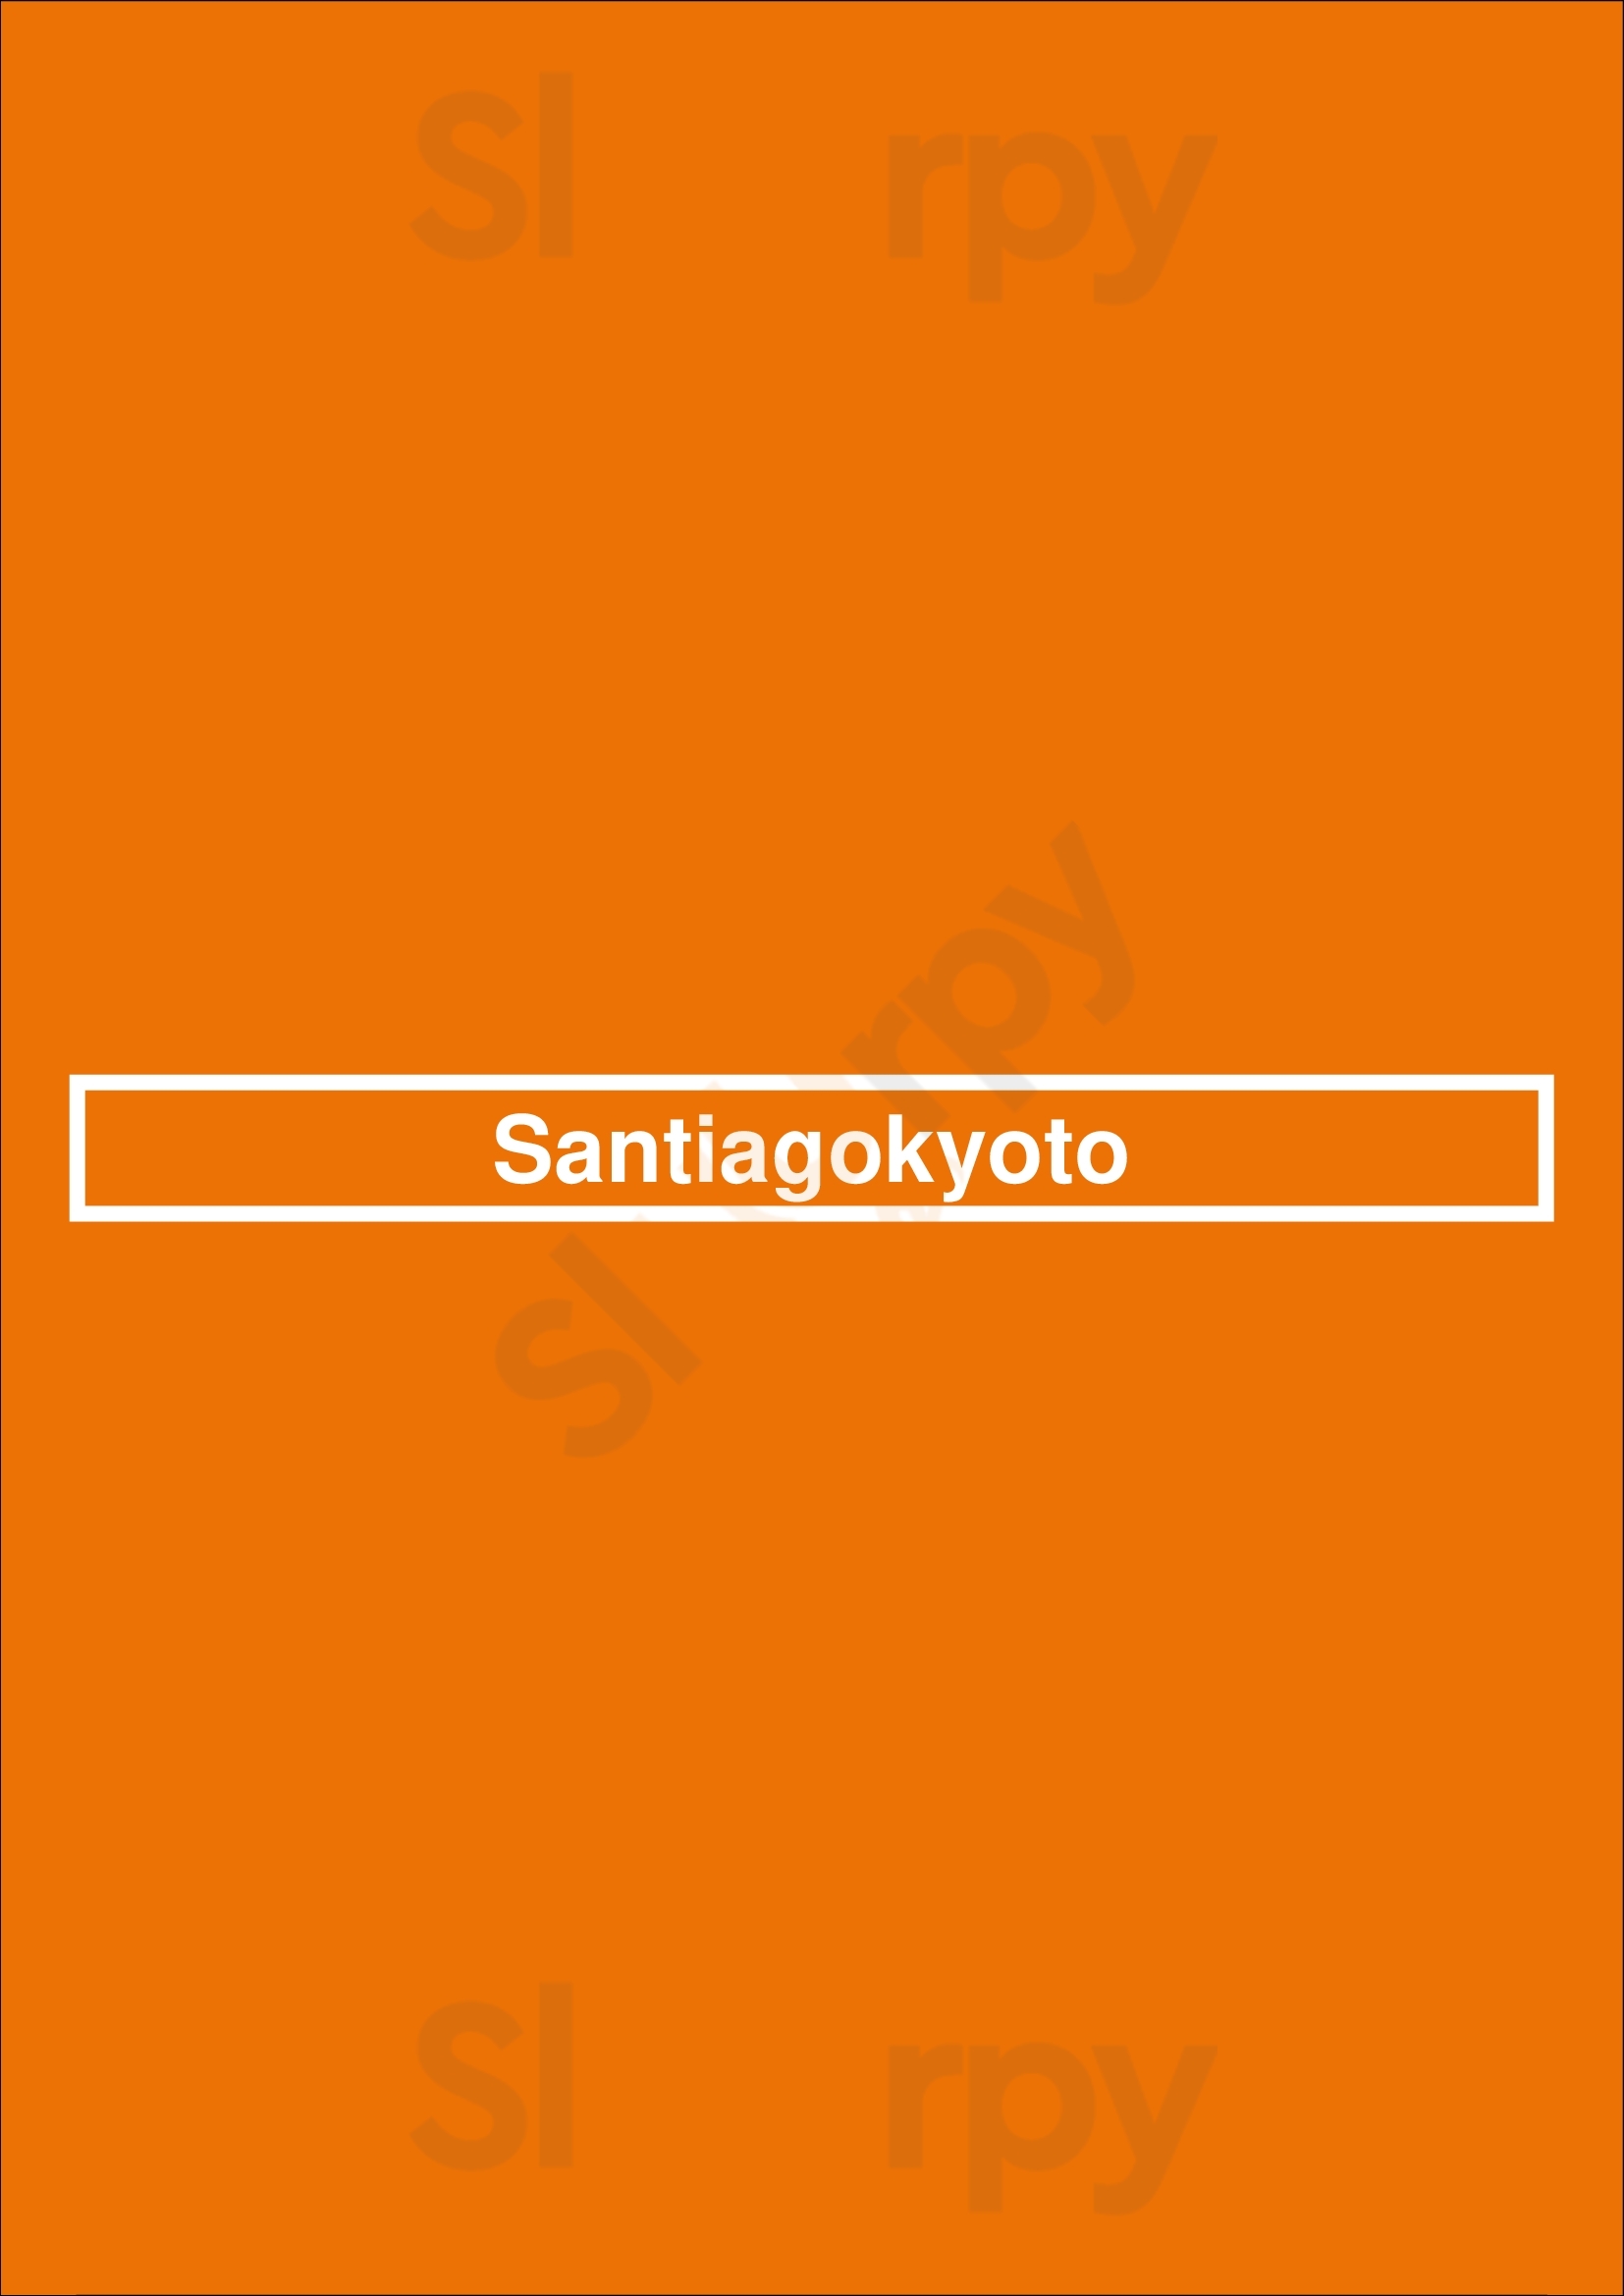 Santiagokyoto Santiago de Compostela Menu - 1